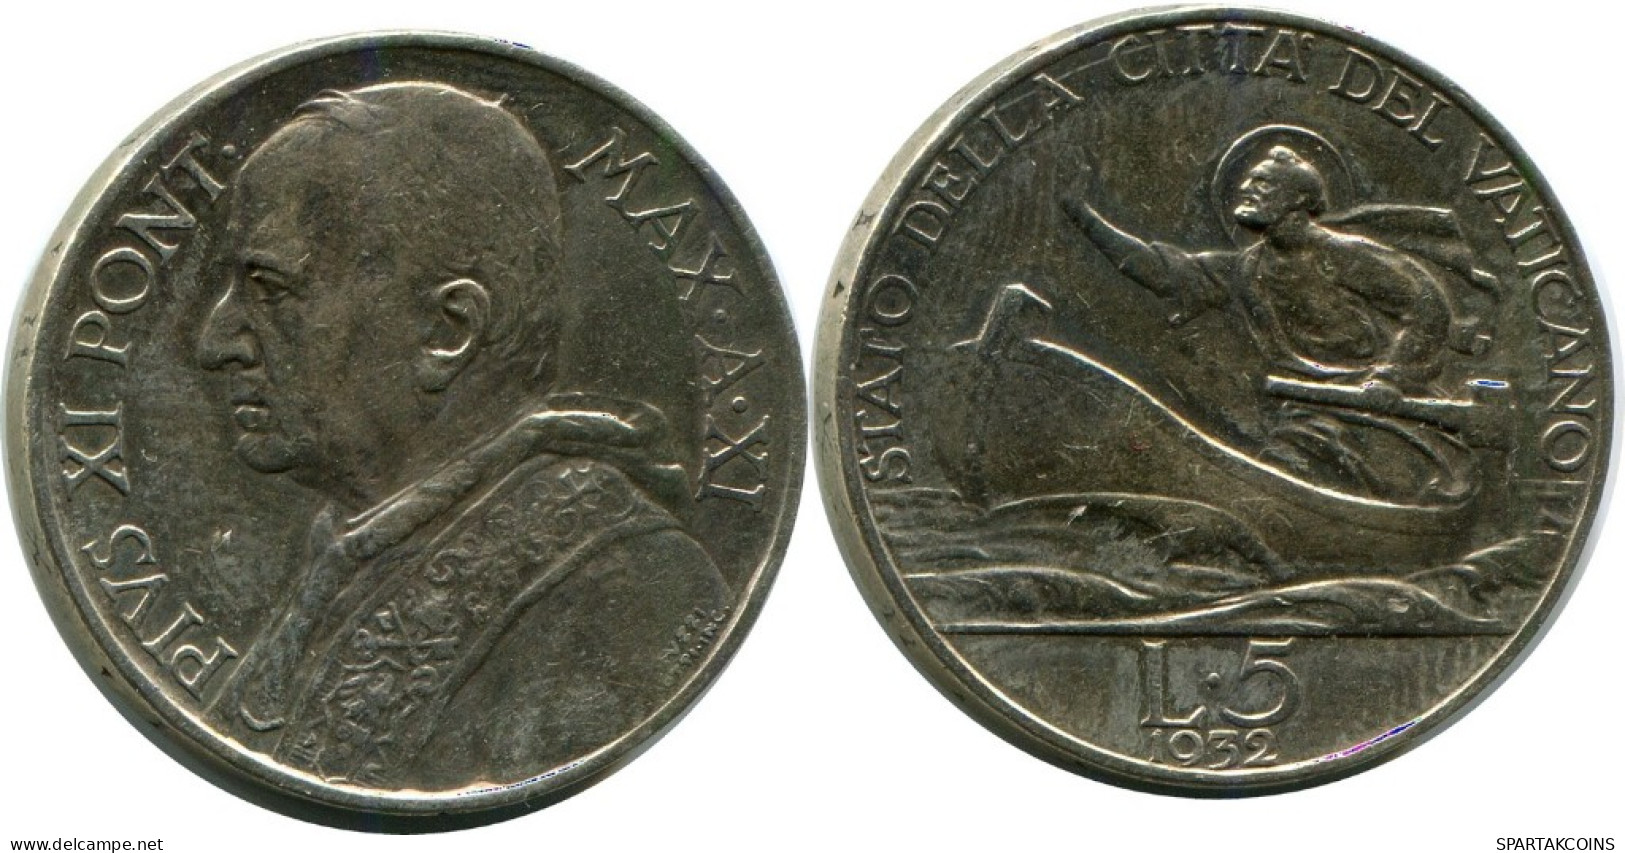 5 LIRE 1932 VATIKAN VATICAN Münze Pius XI (1922-1939) SILBER #AH329.16.D.A - Vatican